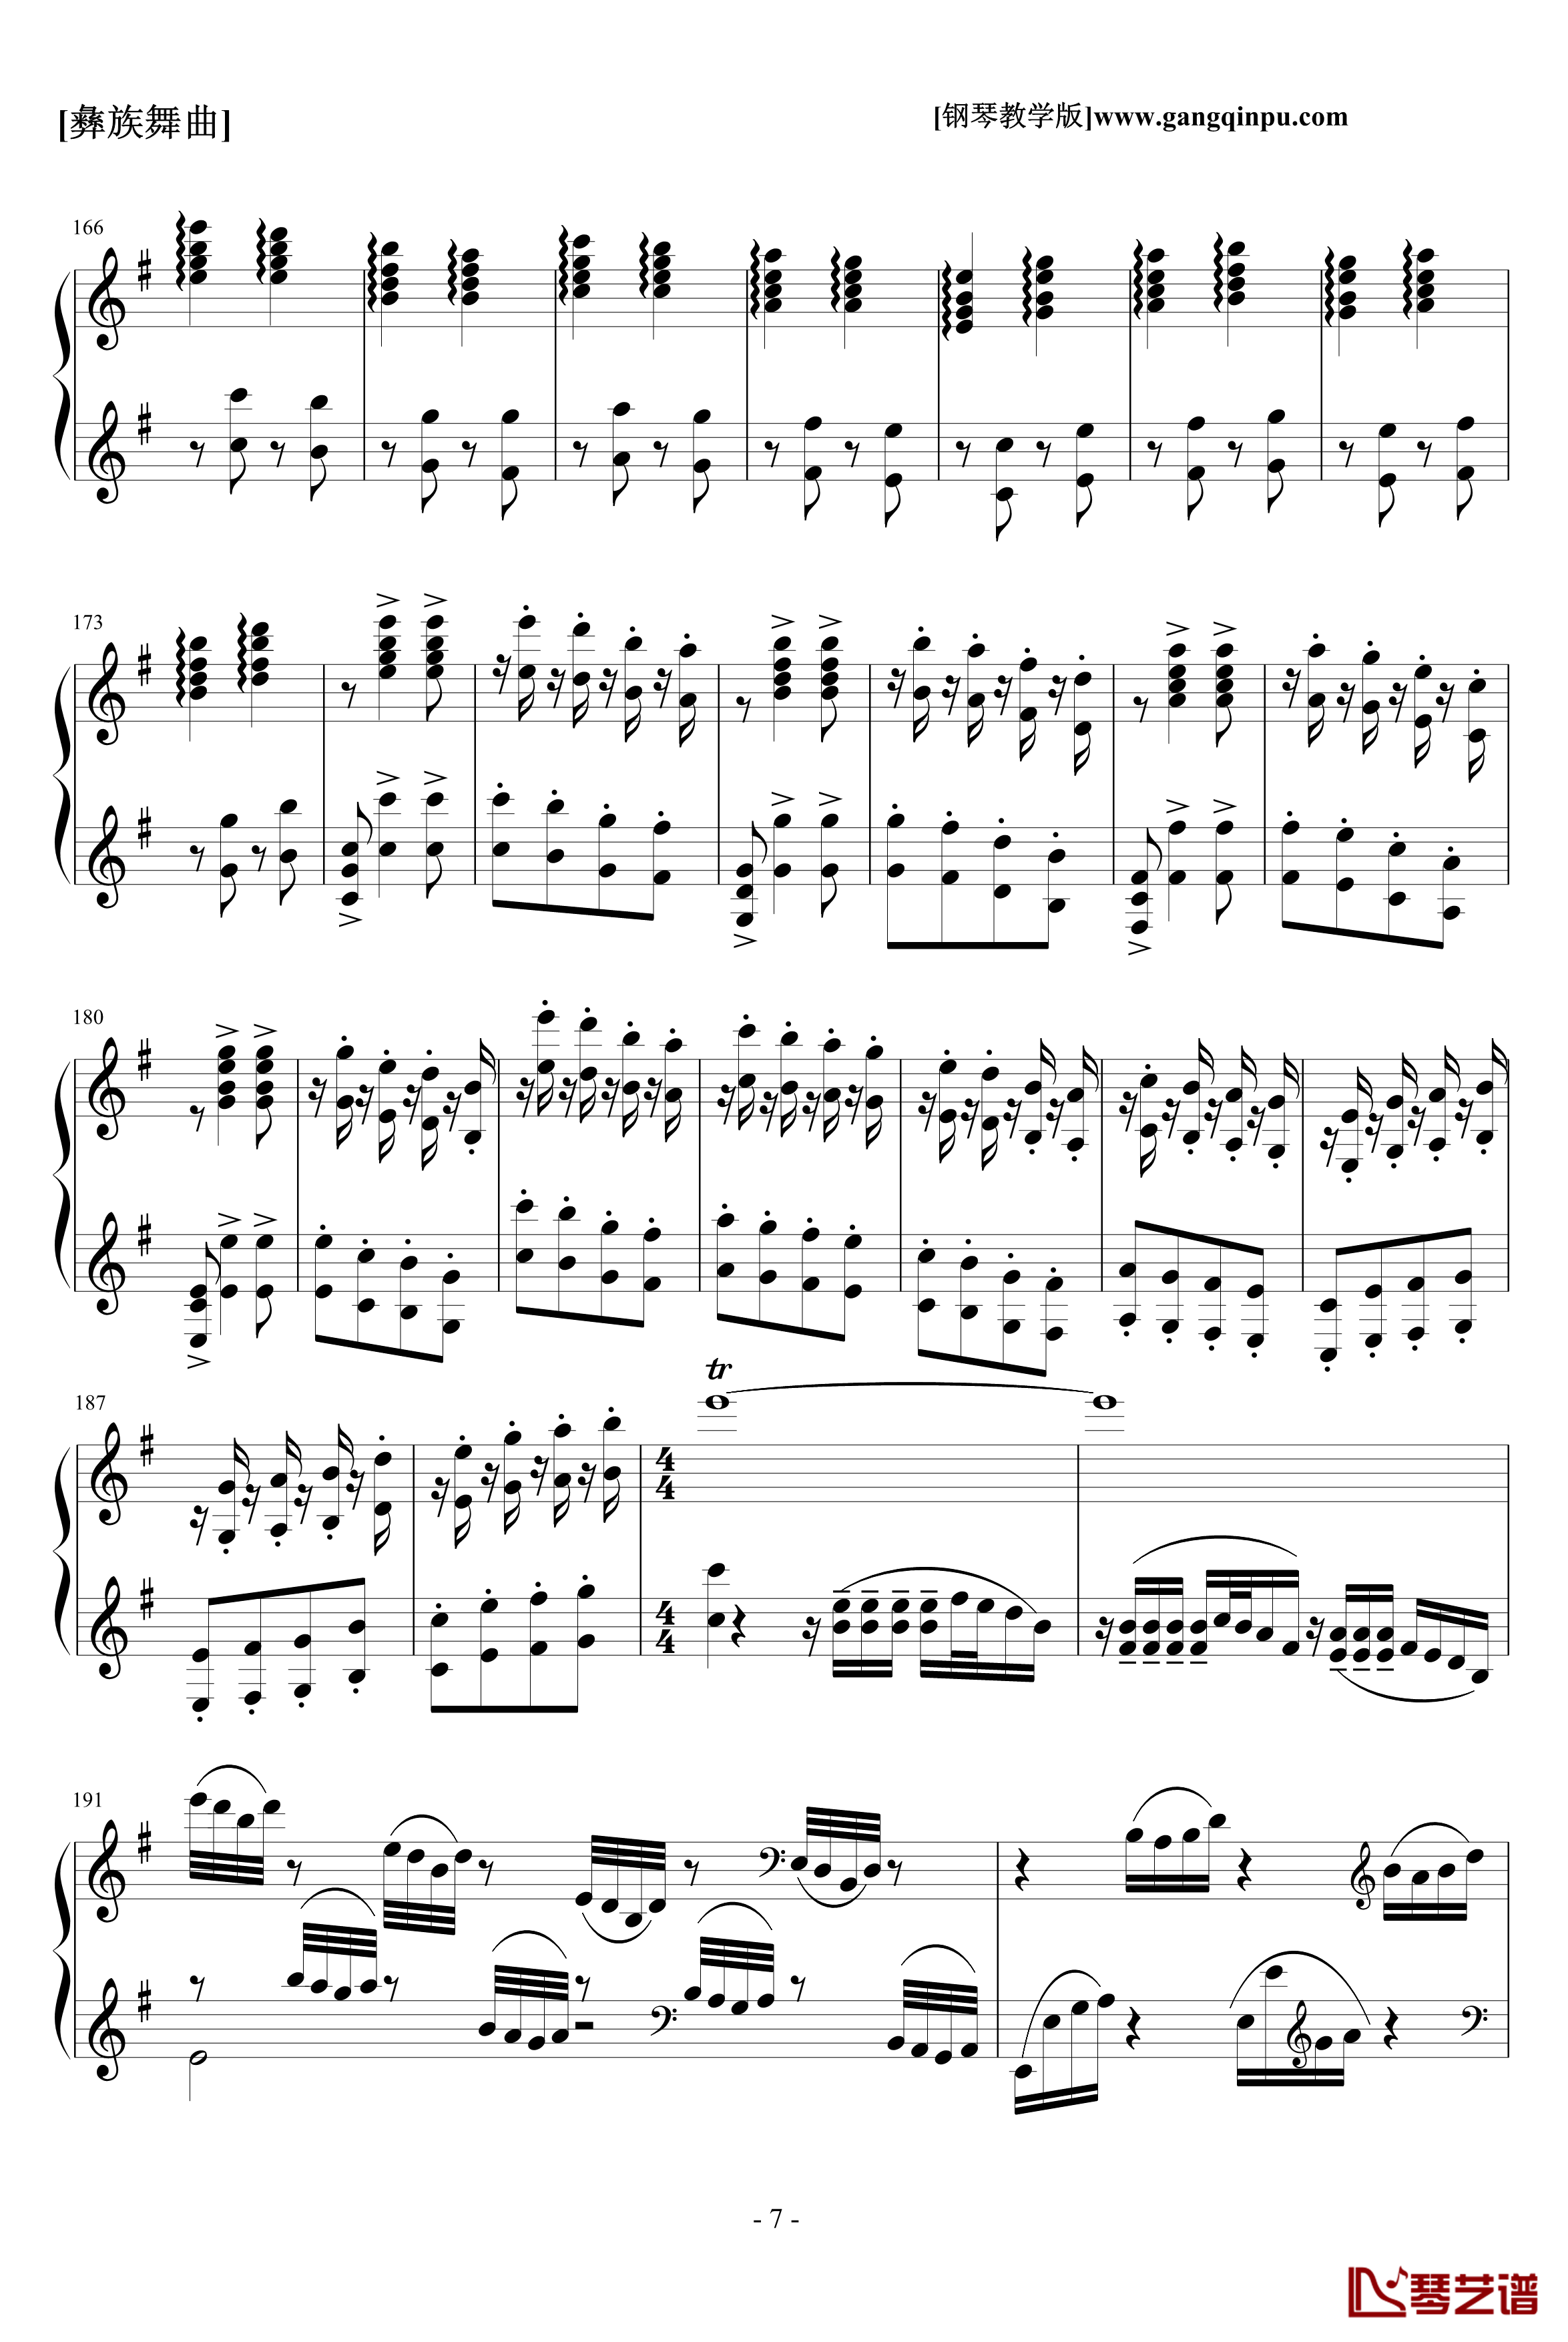 彝族舞曲钢琴谱-中国名曲